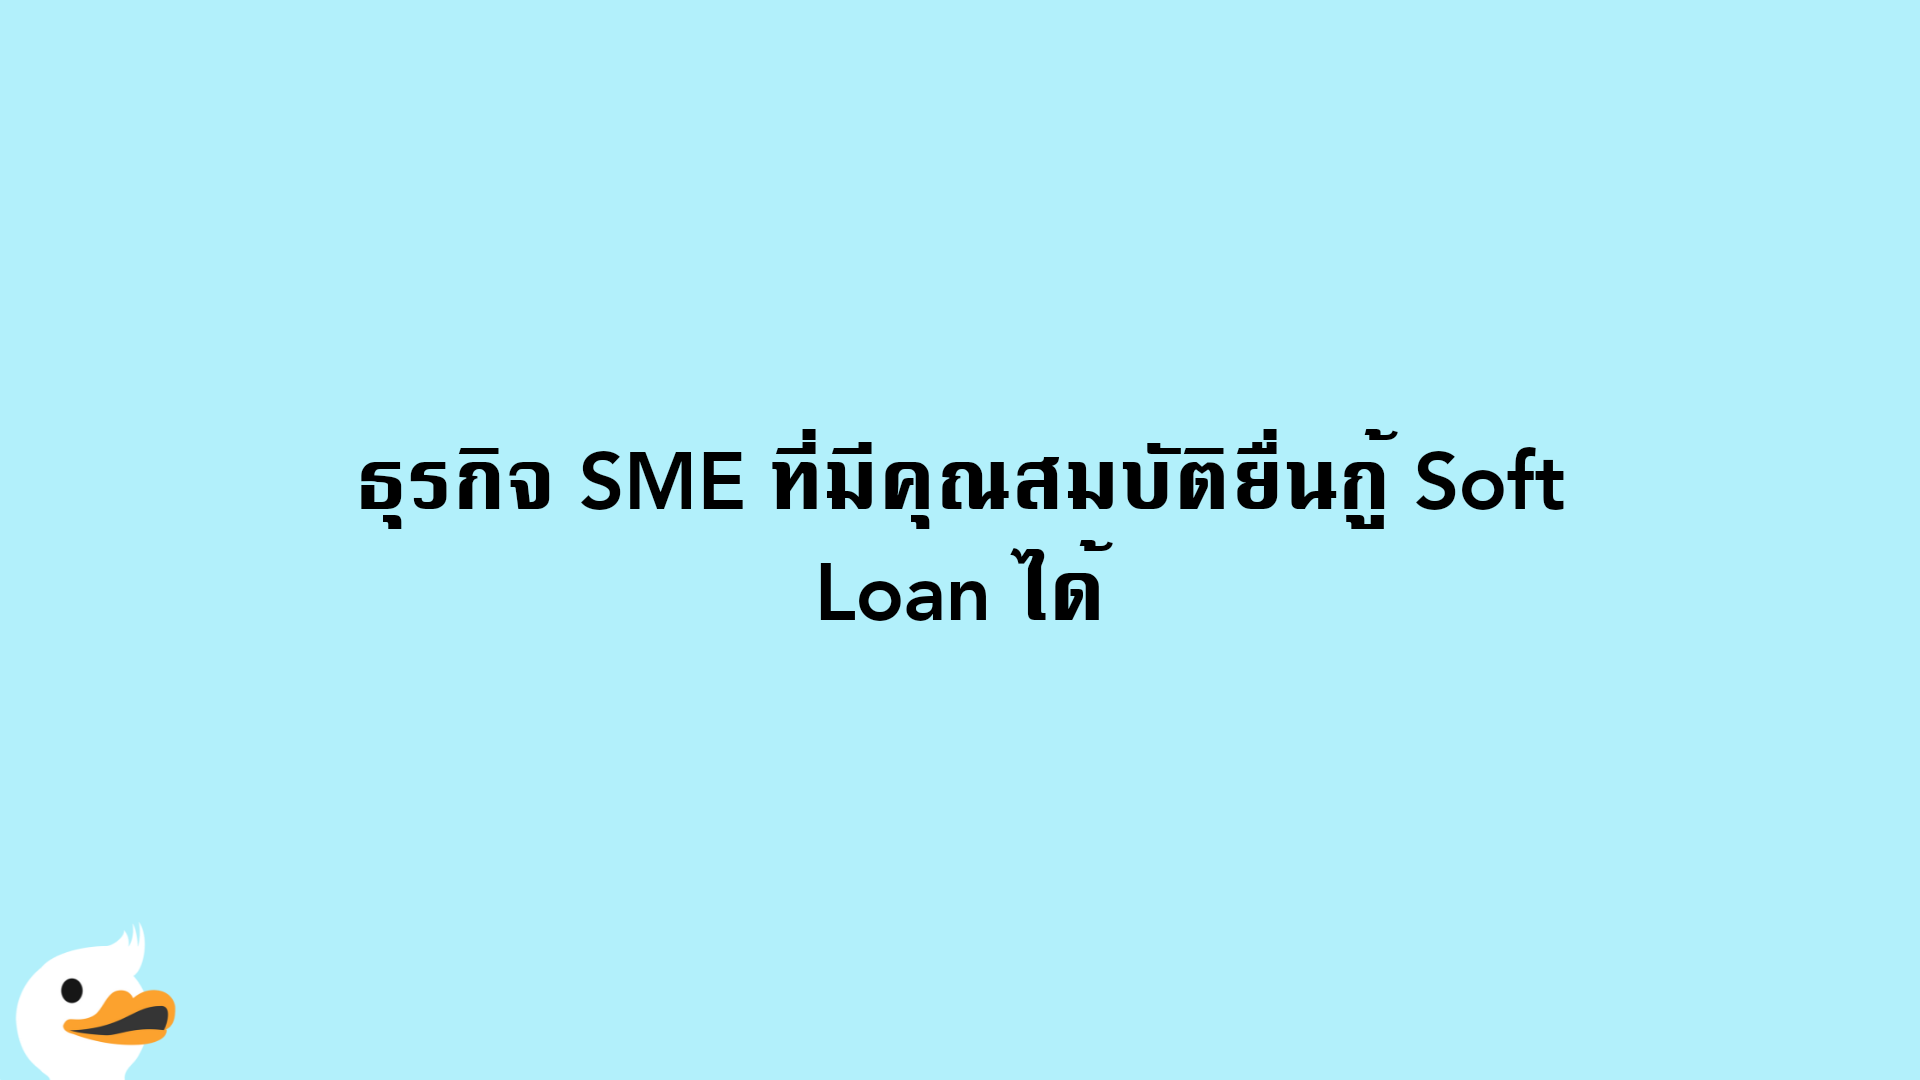 ธุรกิจ SME ที่มีคุณสมบัติยื่นกู้ Soft Loan ได้